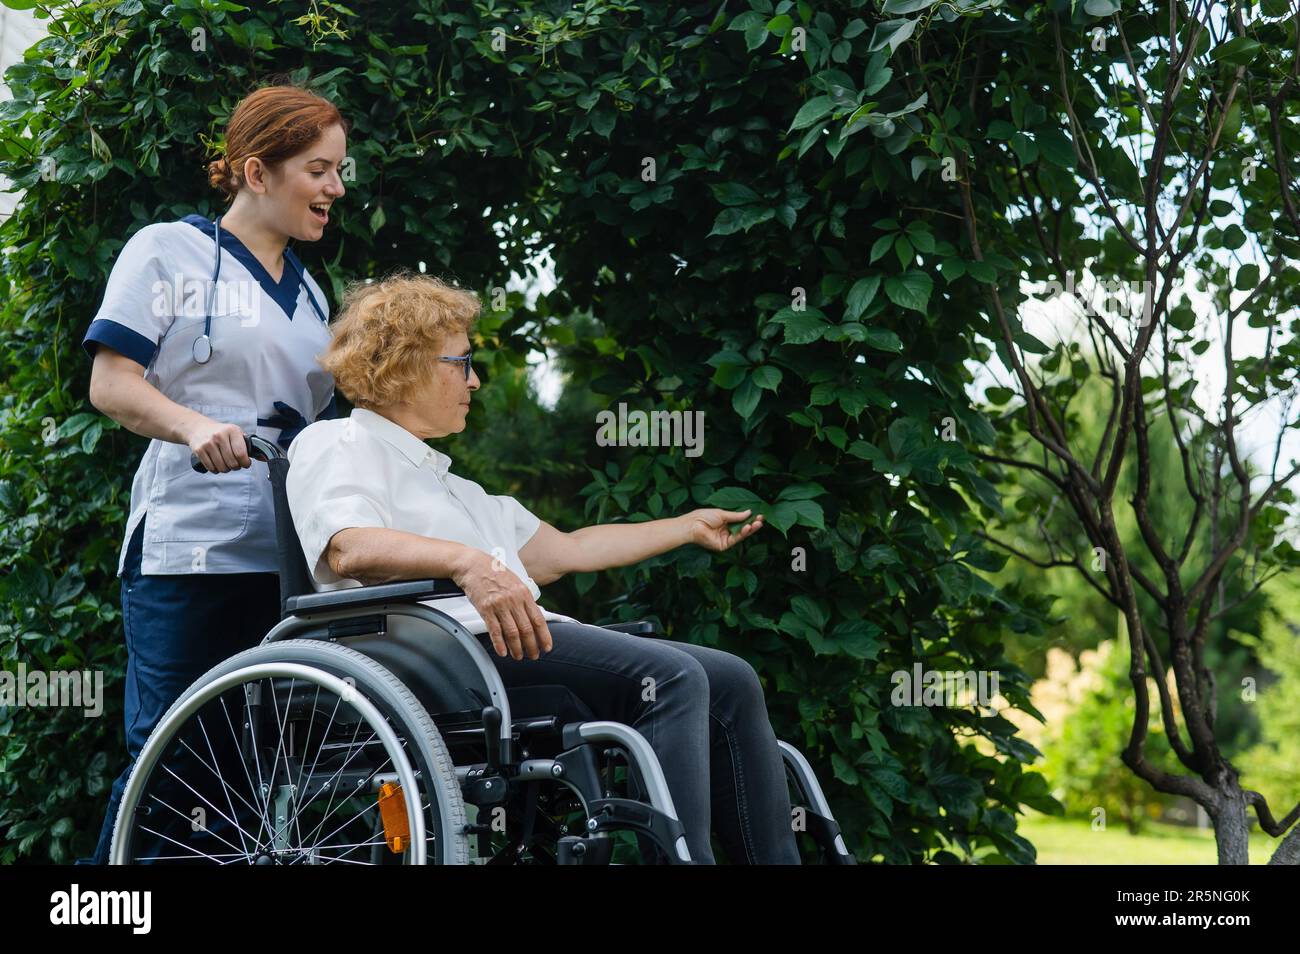 Une femme de race blanche marche avec un patient âgé en fauteuil roulant dans le parc. Une infirmière accompagne une vieille femme lors d'une promenade à l'extérieur. Banque D'Images